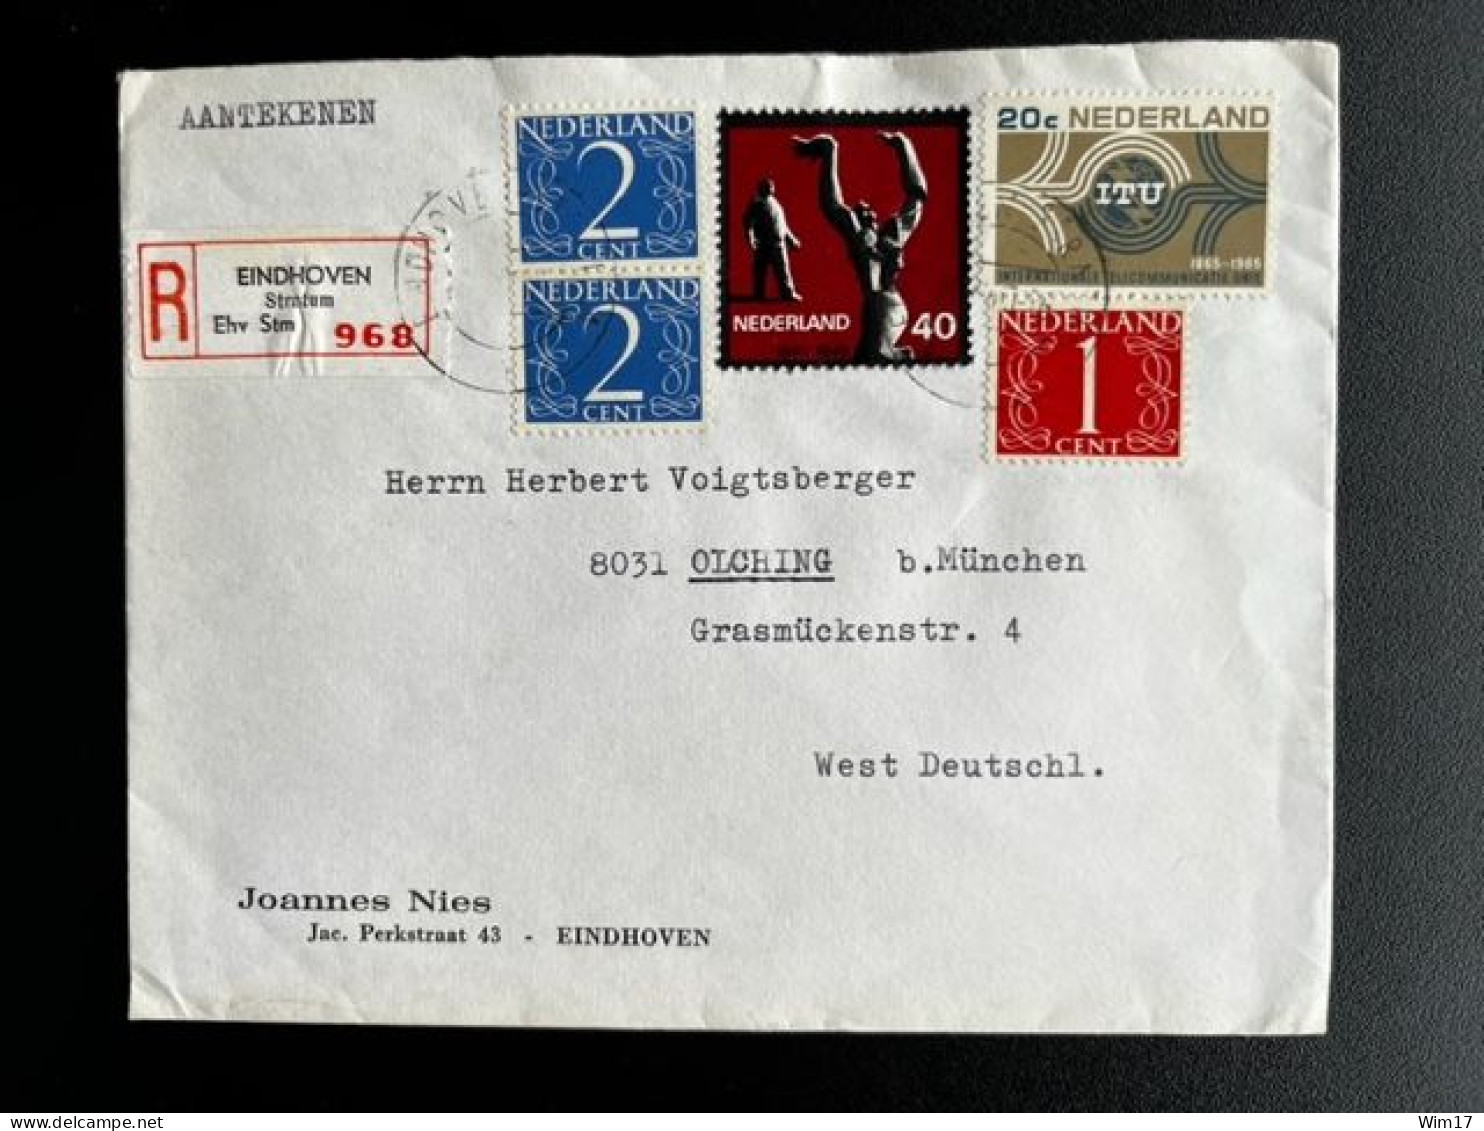 NETHERLANDS 1965 REGISTERED LETTER EINDHOVEN STRATUM TO OLCHING NEDERLAND AANGETEKEND - Briefe U. Dokumente